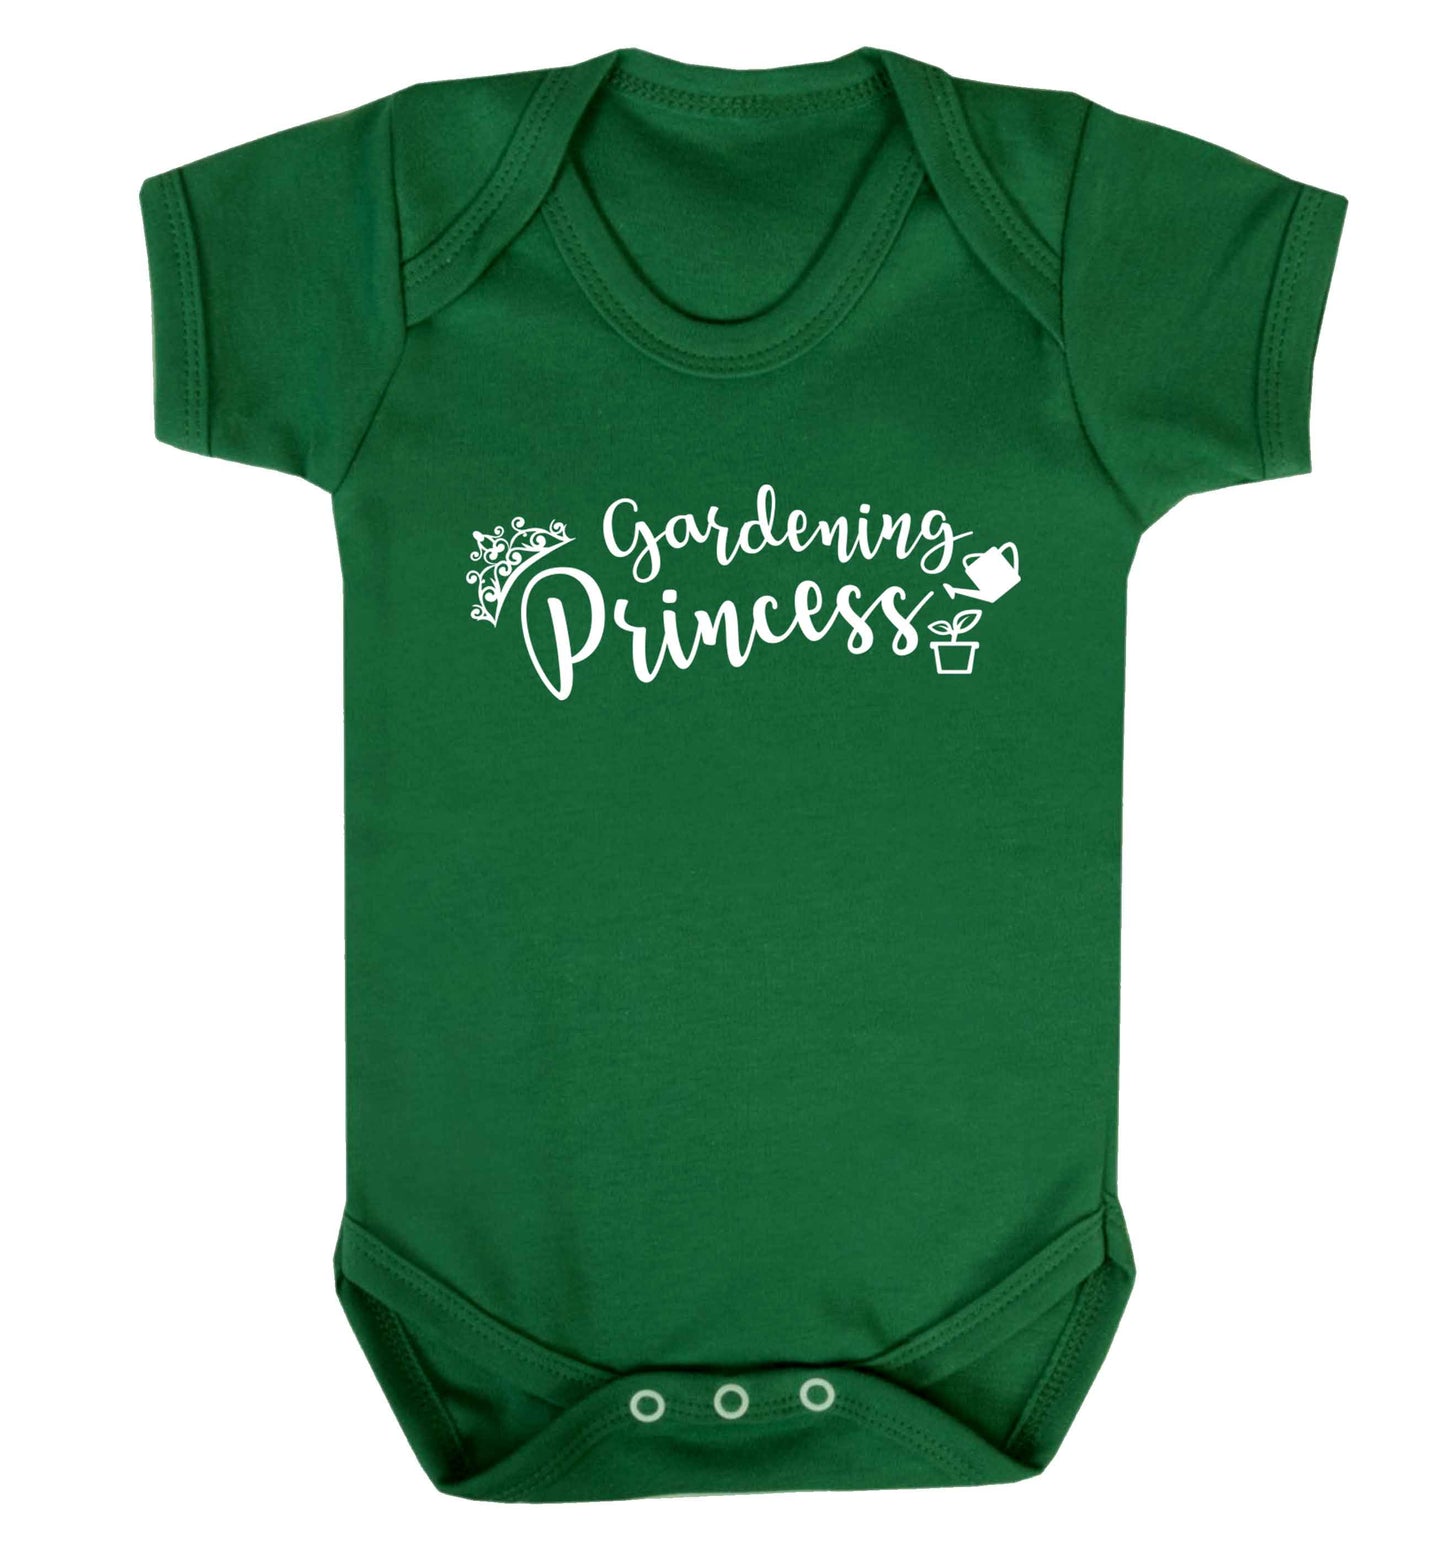 Gardening princess Baby Vest green 18-24 months